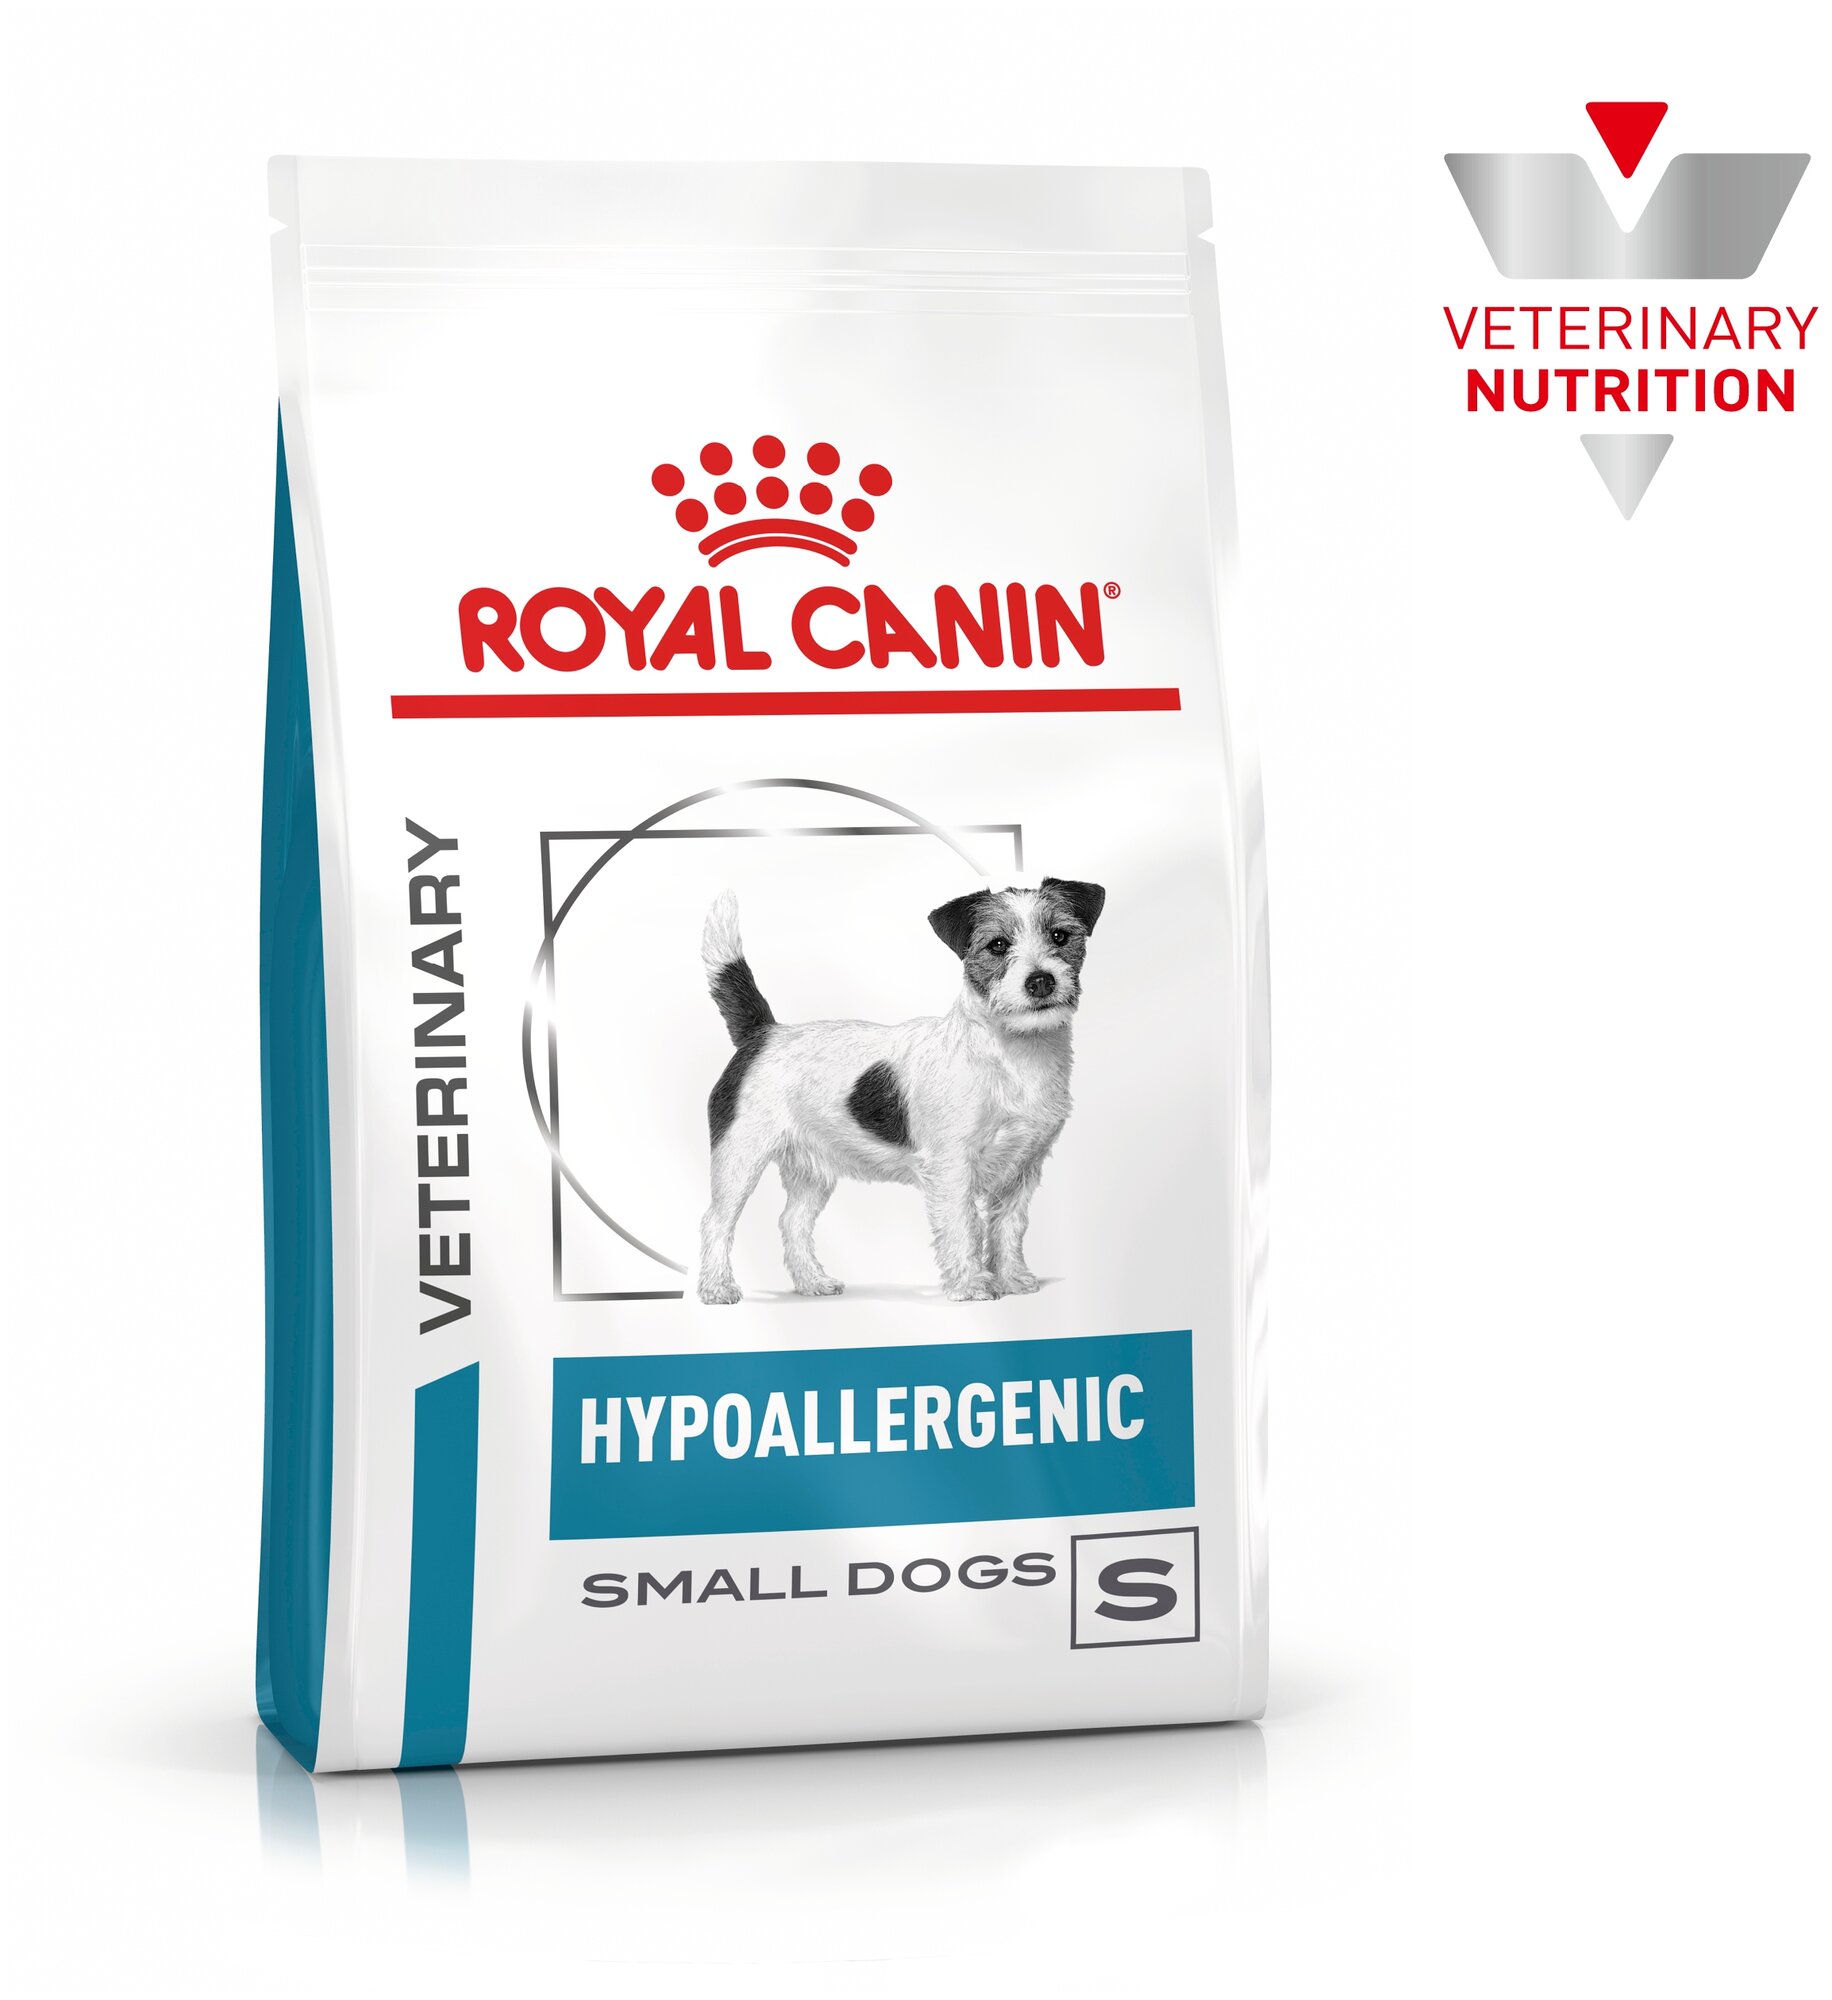 Royal Canin Hypoallergenic Small Dog корм для собак мелких пород при пищевой аллергии Диетический, 3,5 кг.